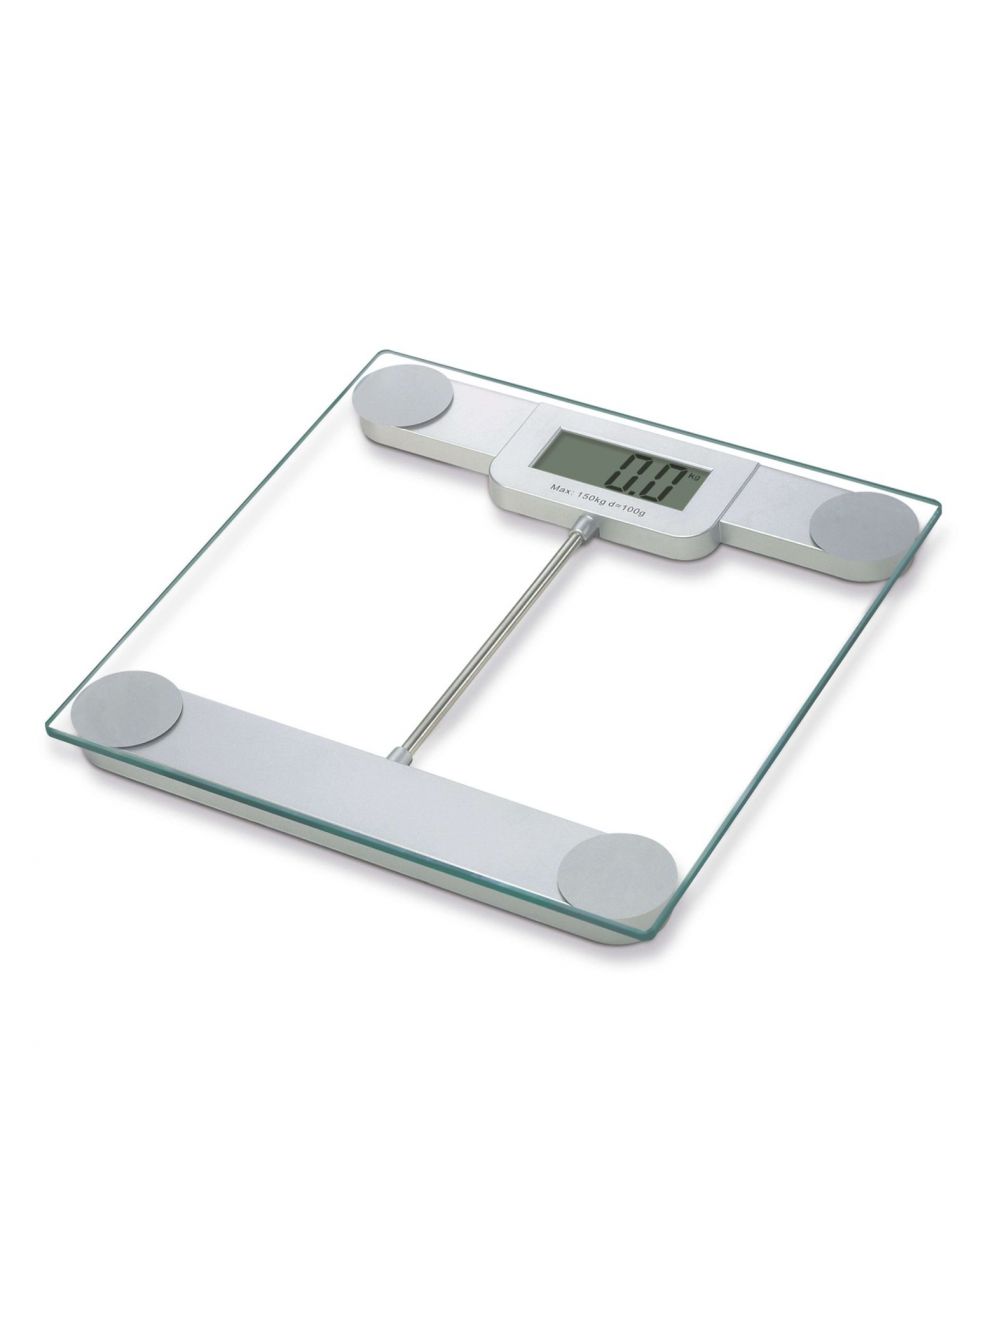 Royalford RF8351 Metallic Digital Body Scale